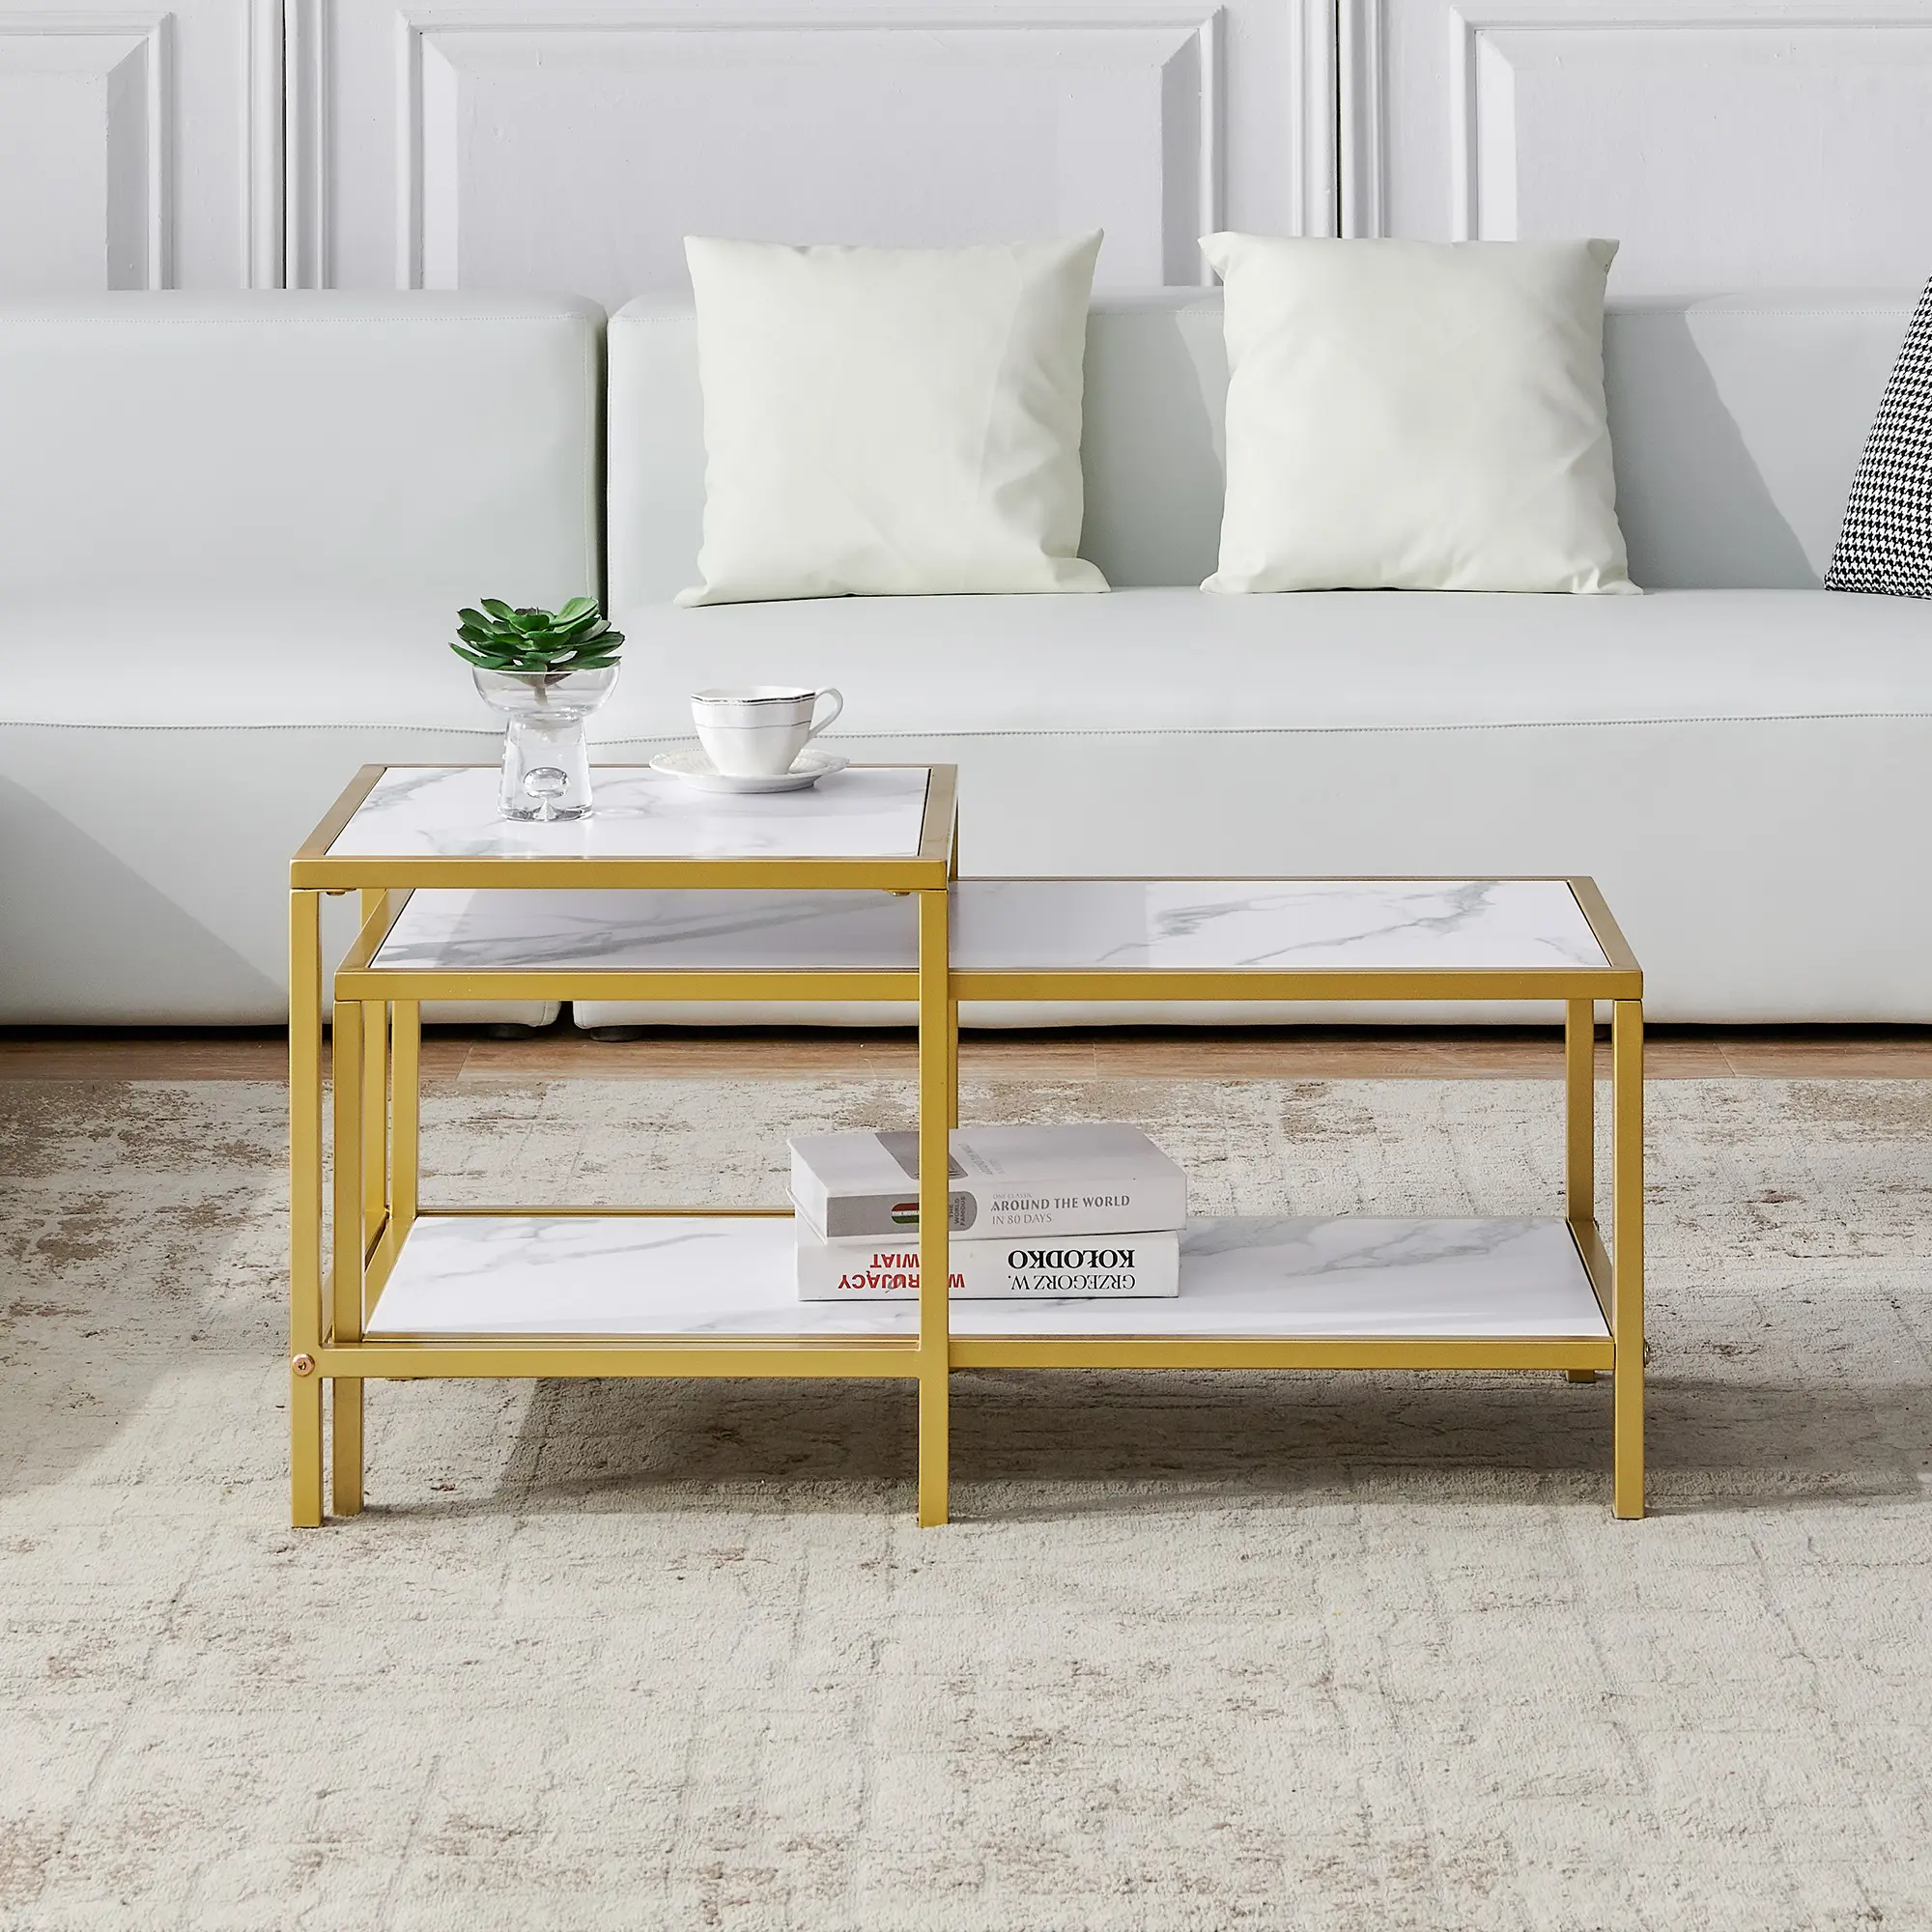 Table basse en bois de marbre, design vintage, avec rangement, pour le <span class=keywords><strong>bureau</strong></span> et le salon, livraison rapide